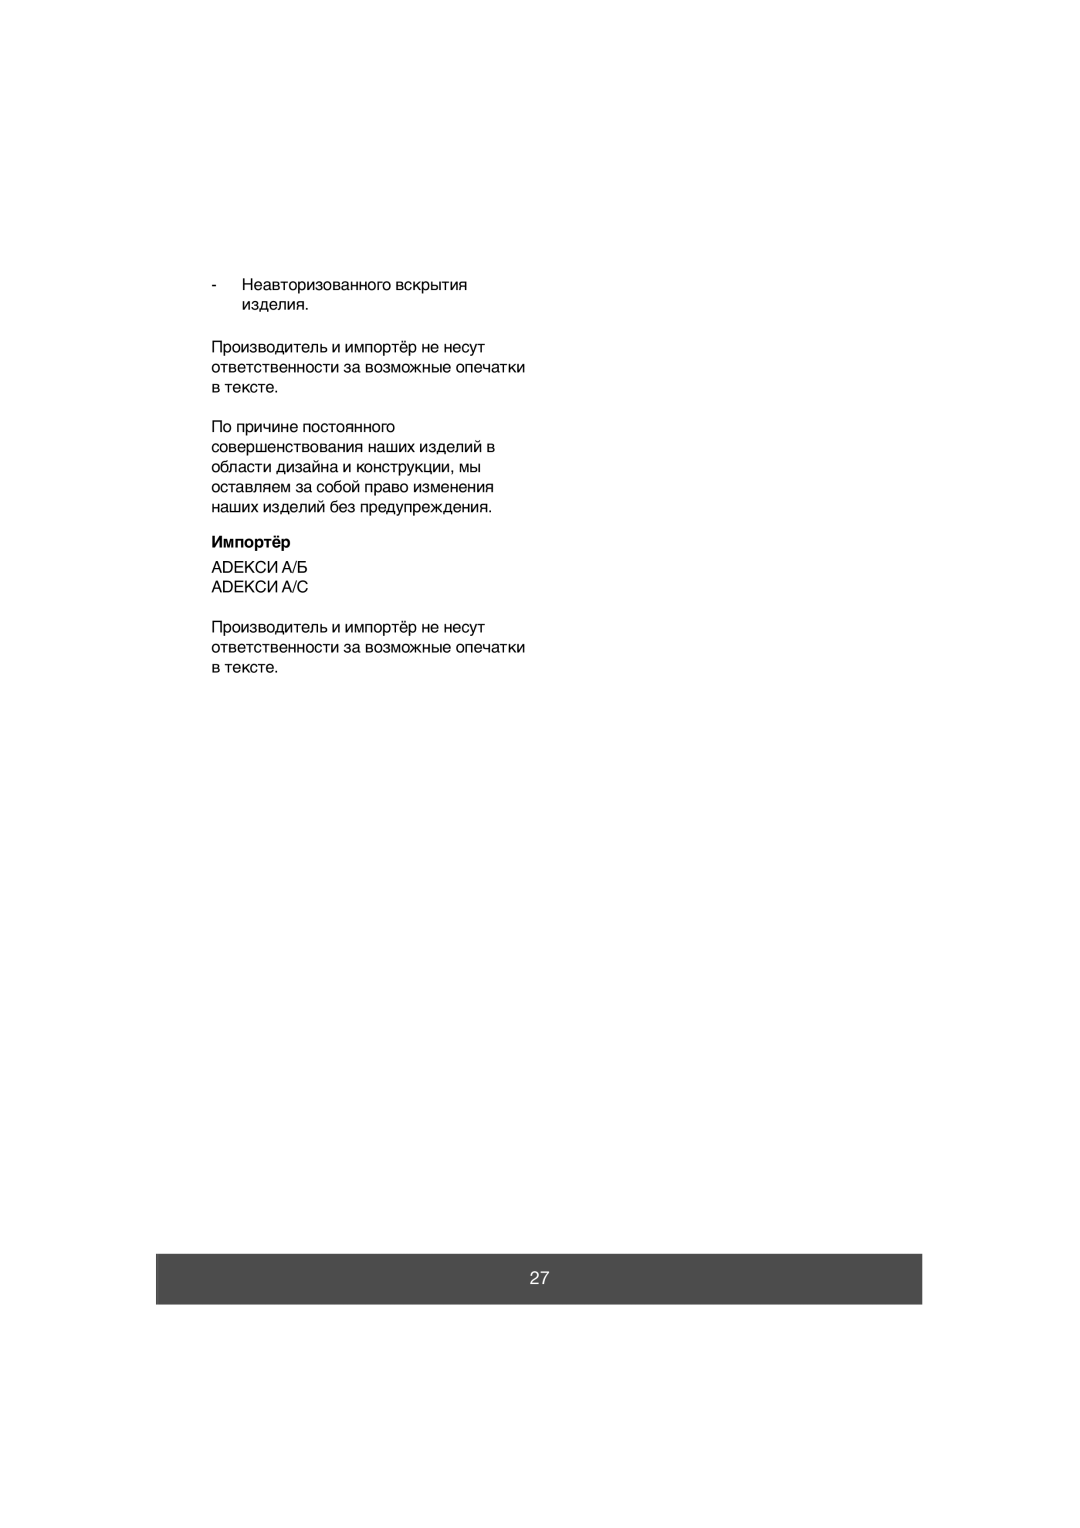 Melissa 640-038 manual Импортёр, Неавторизованного вскрытия изделия, Adekси А/Б Adekси А/С 